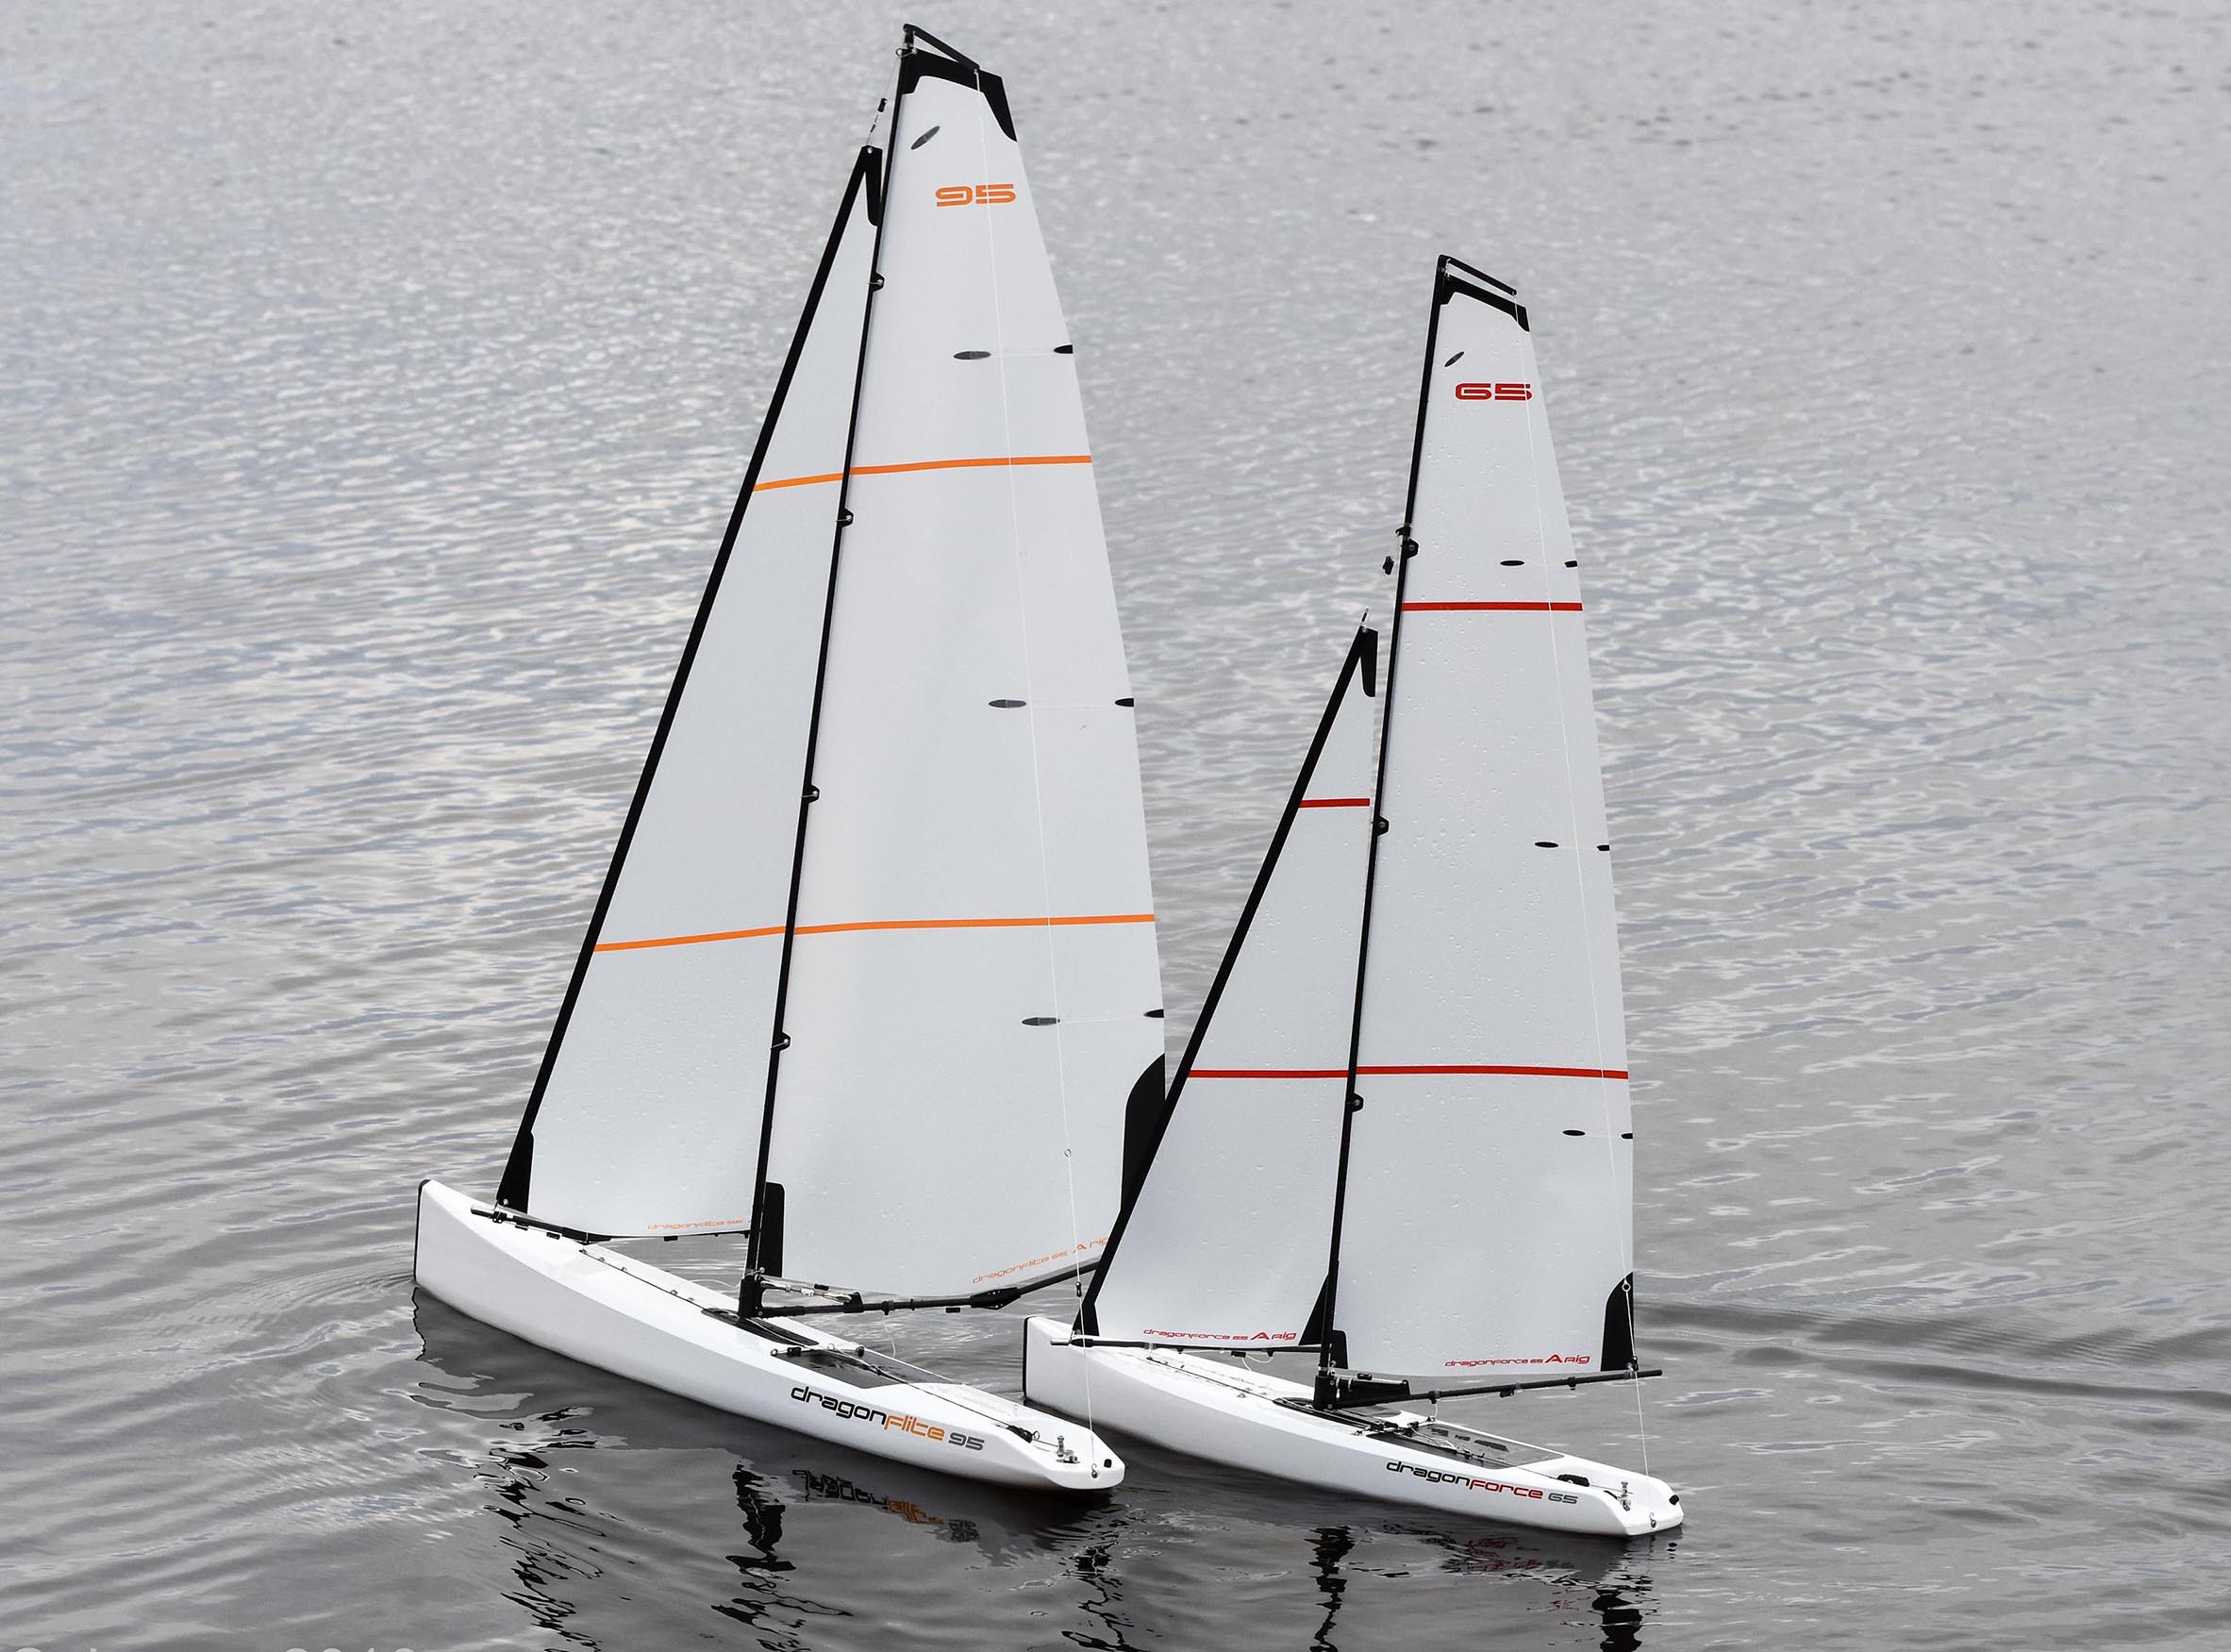 dragonforce 65 v6 racing sailboat